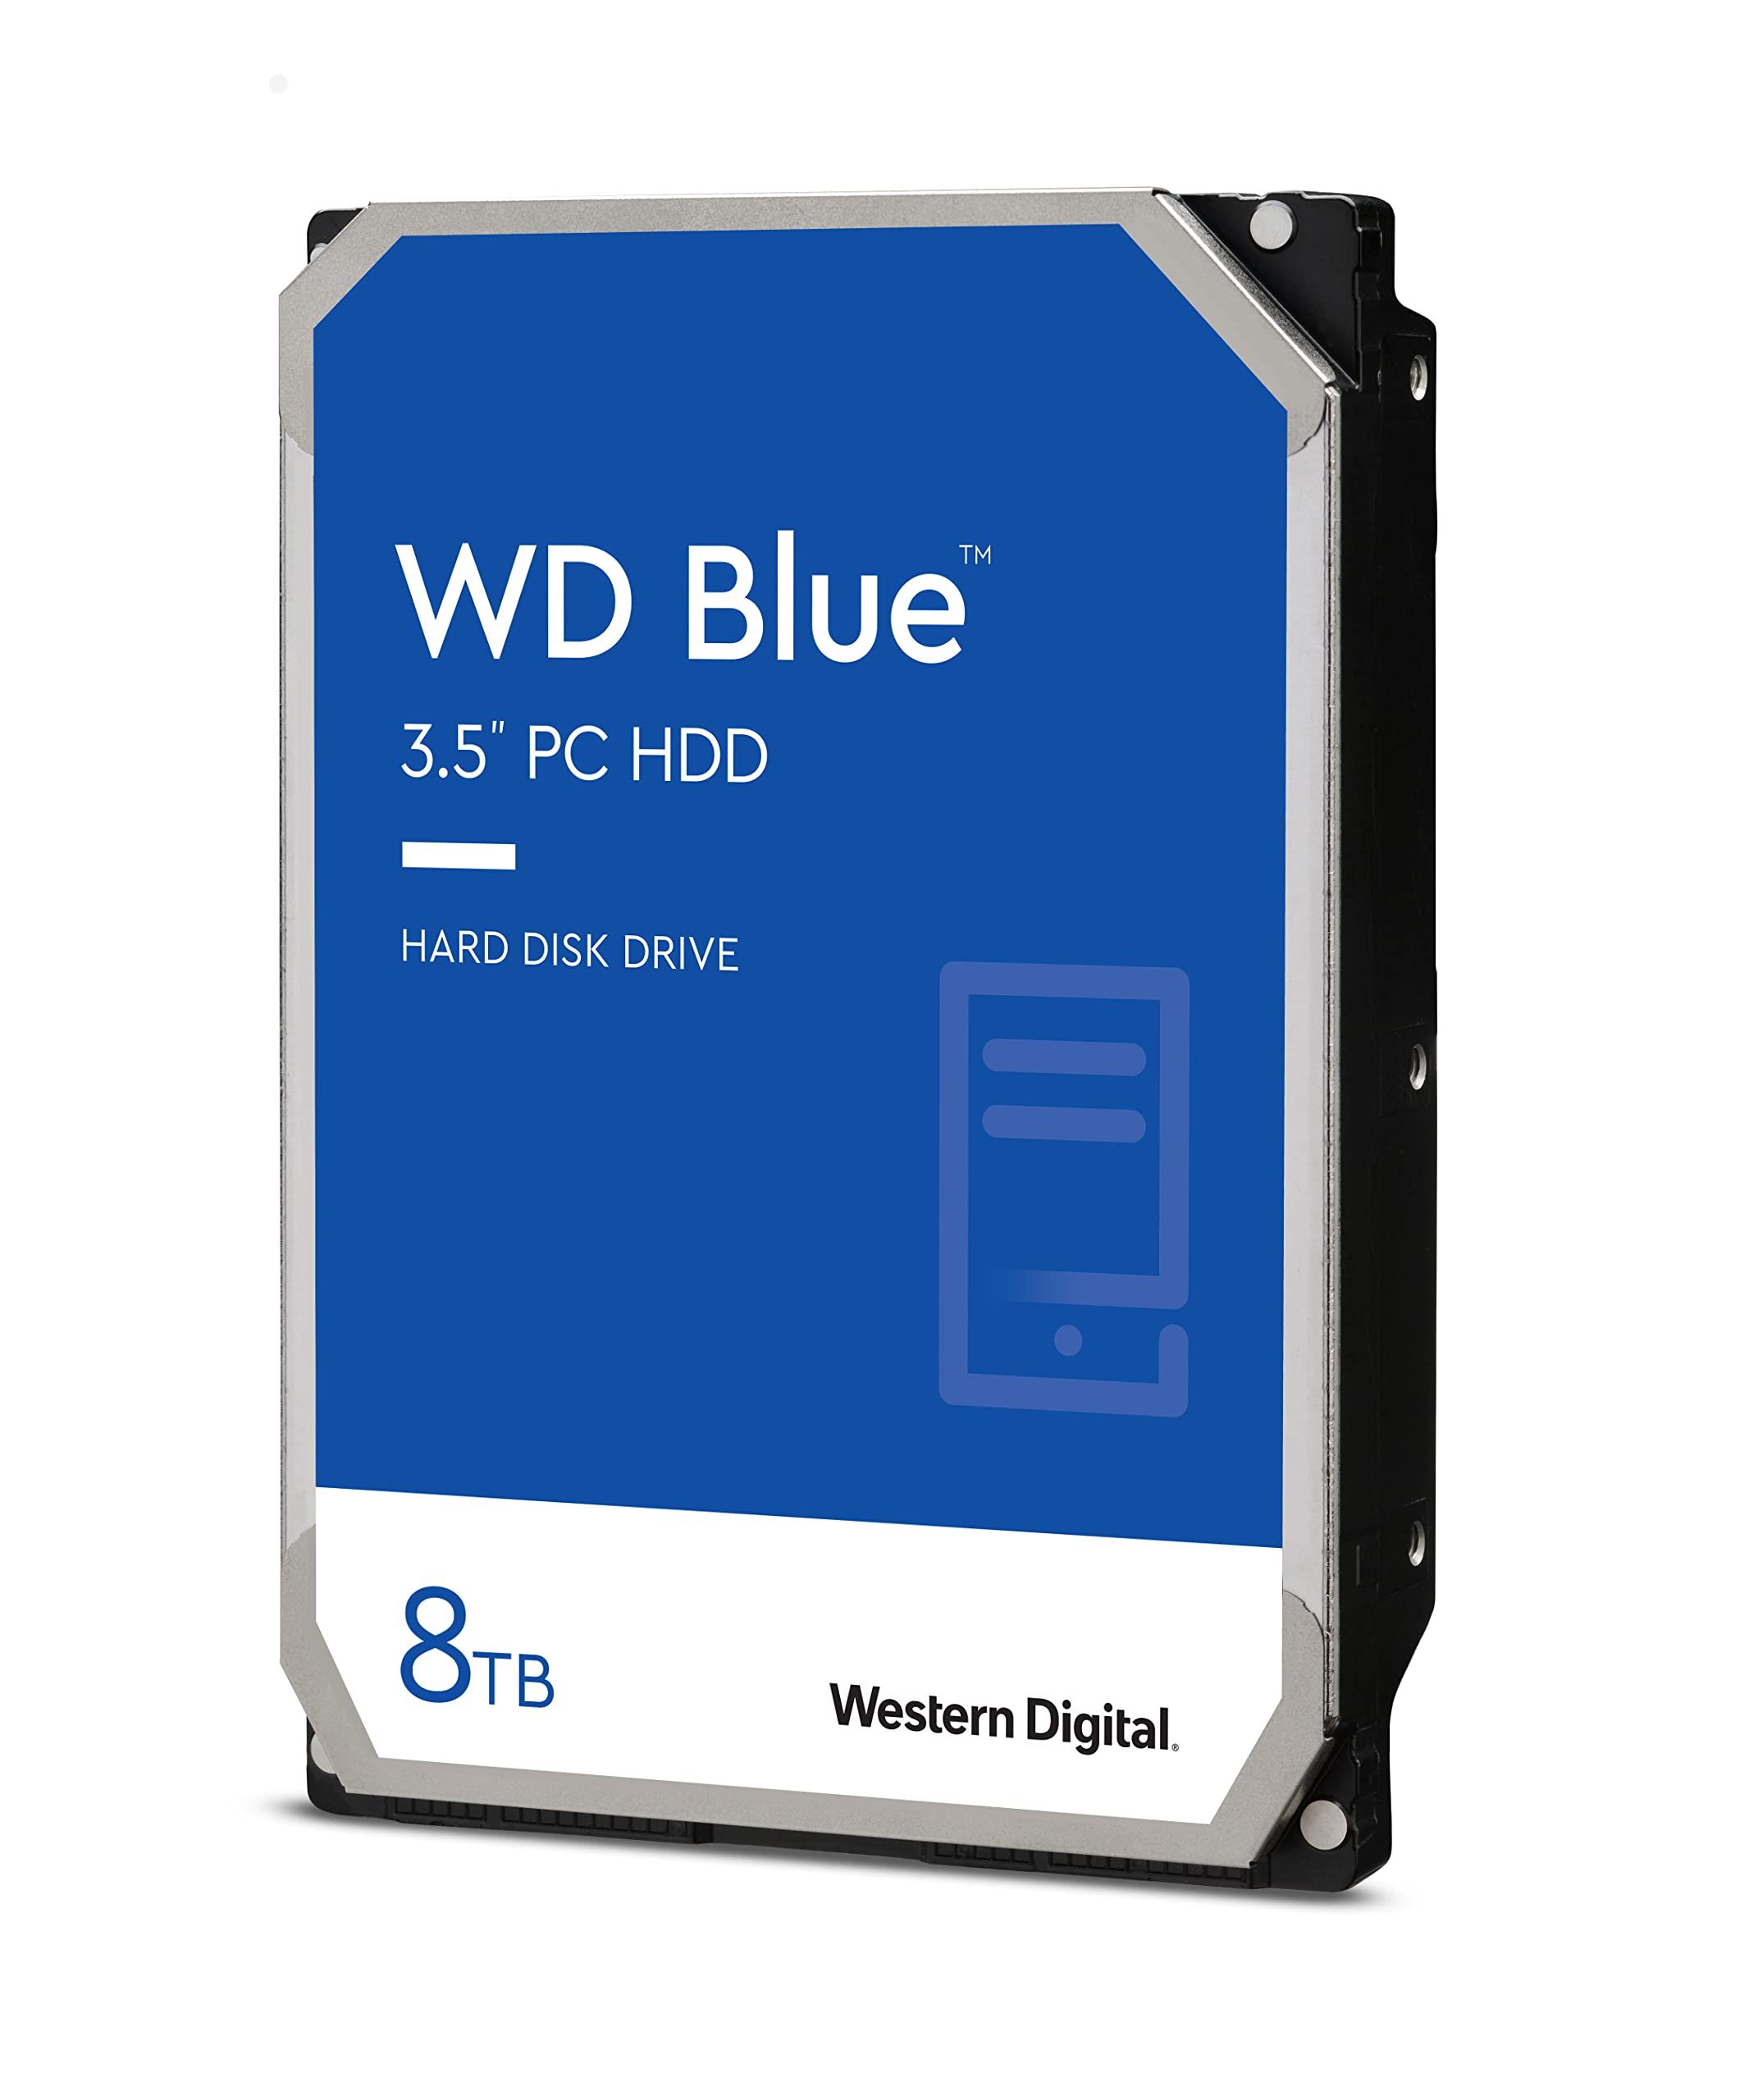 Western Digital 8TB WD Blue Hard Drive HDD - $130 @ Amazon - FS $129.99